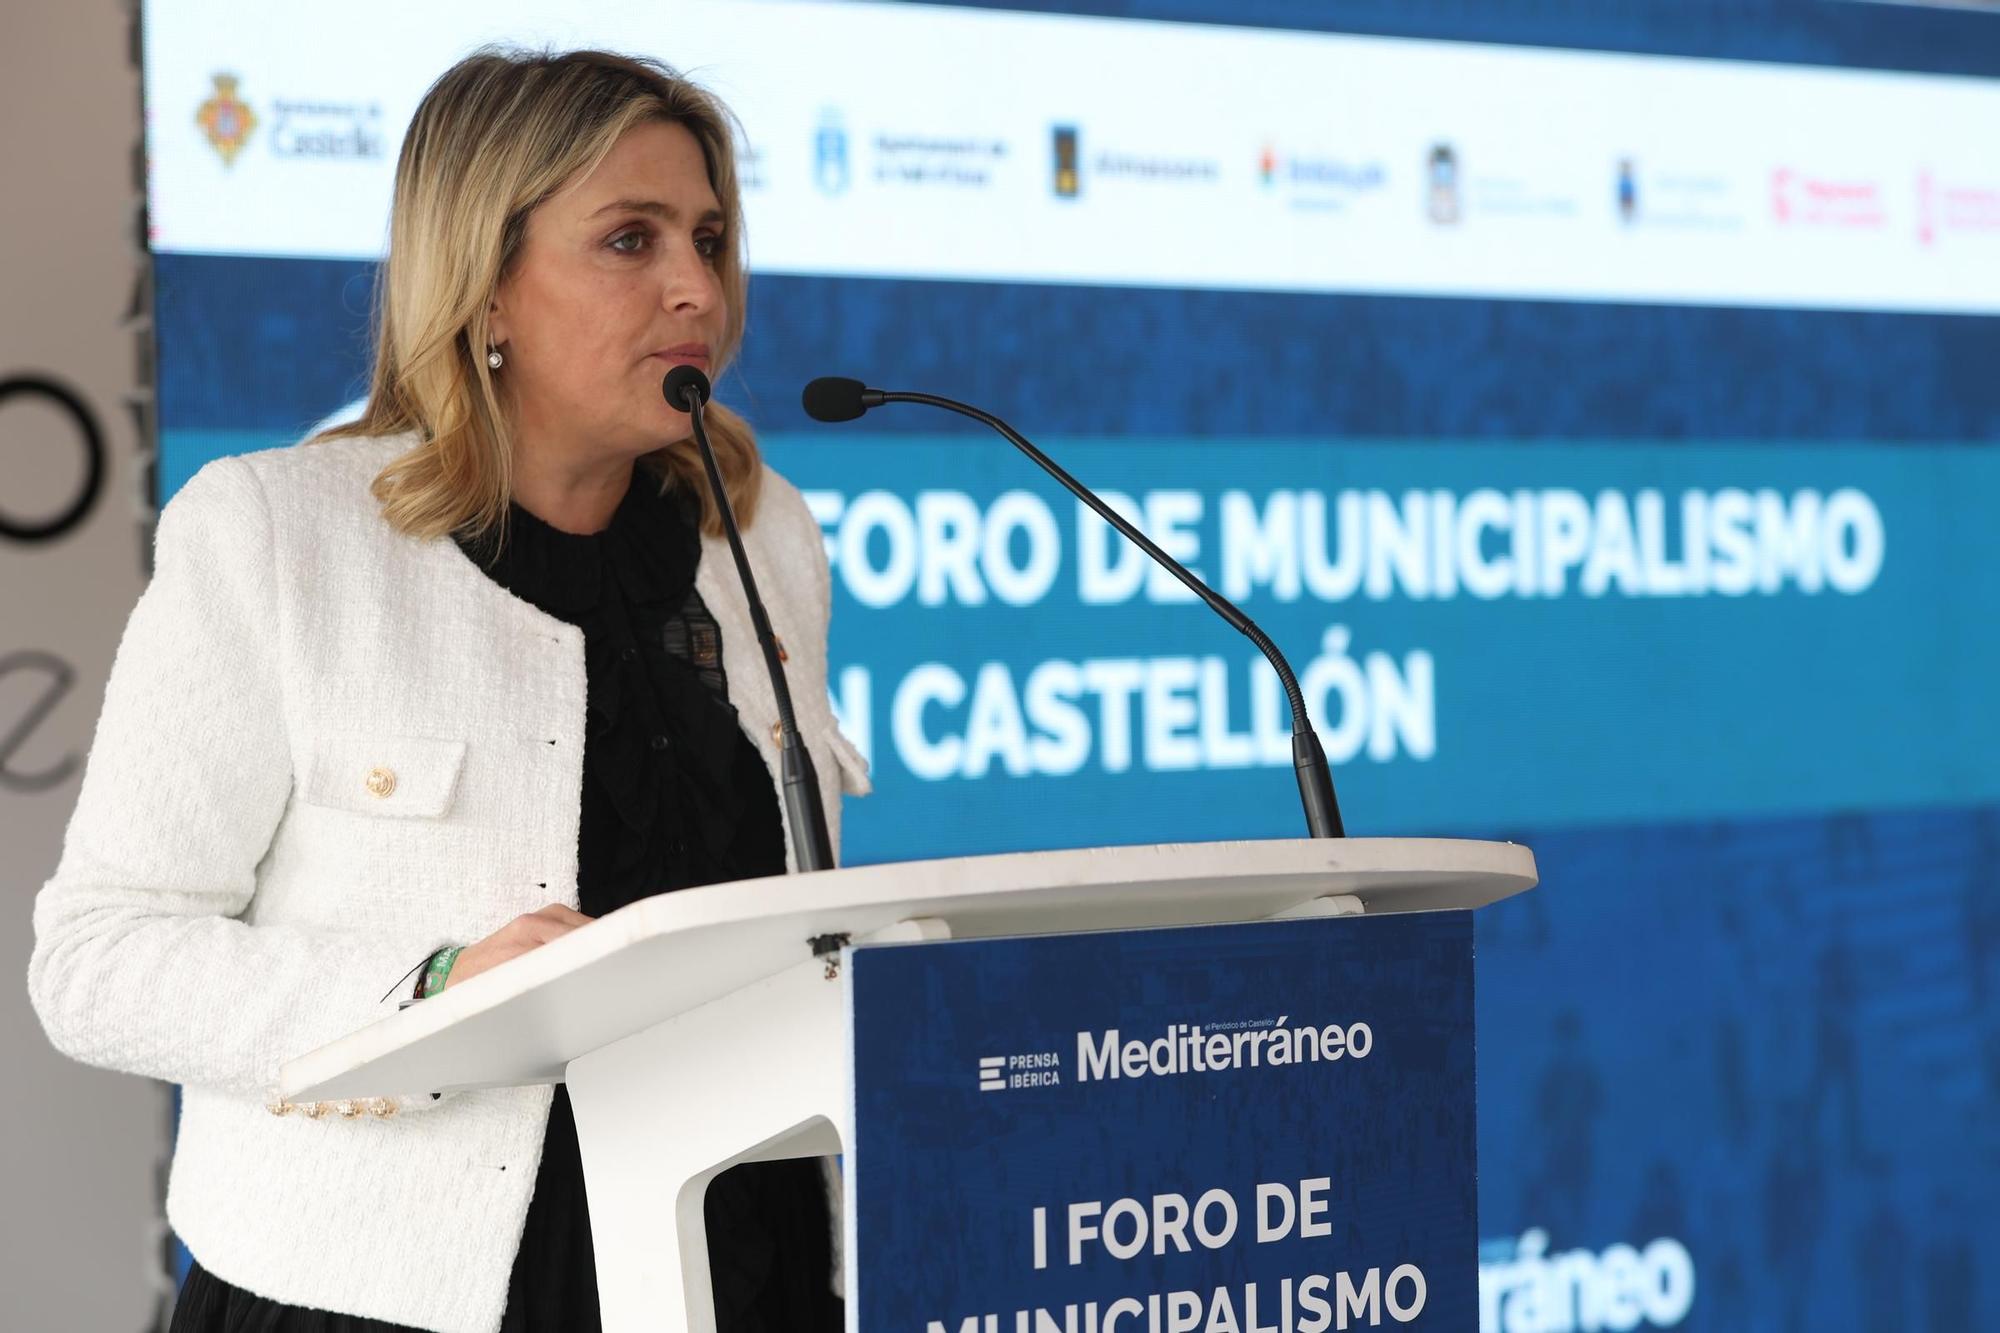 I Foro de Municipalismo en Castellón organizado por Mediterráneo